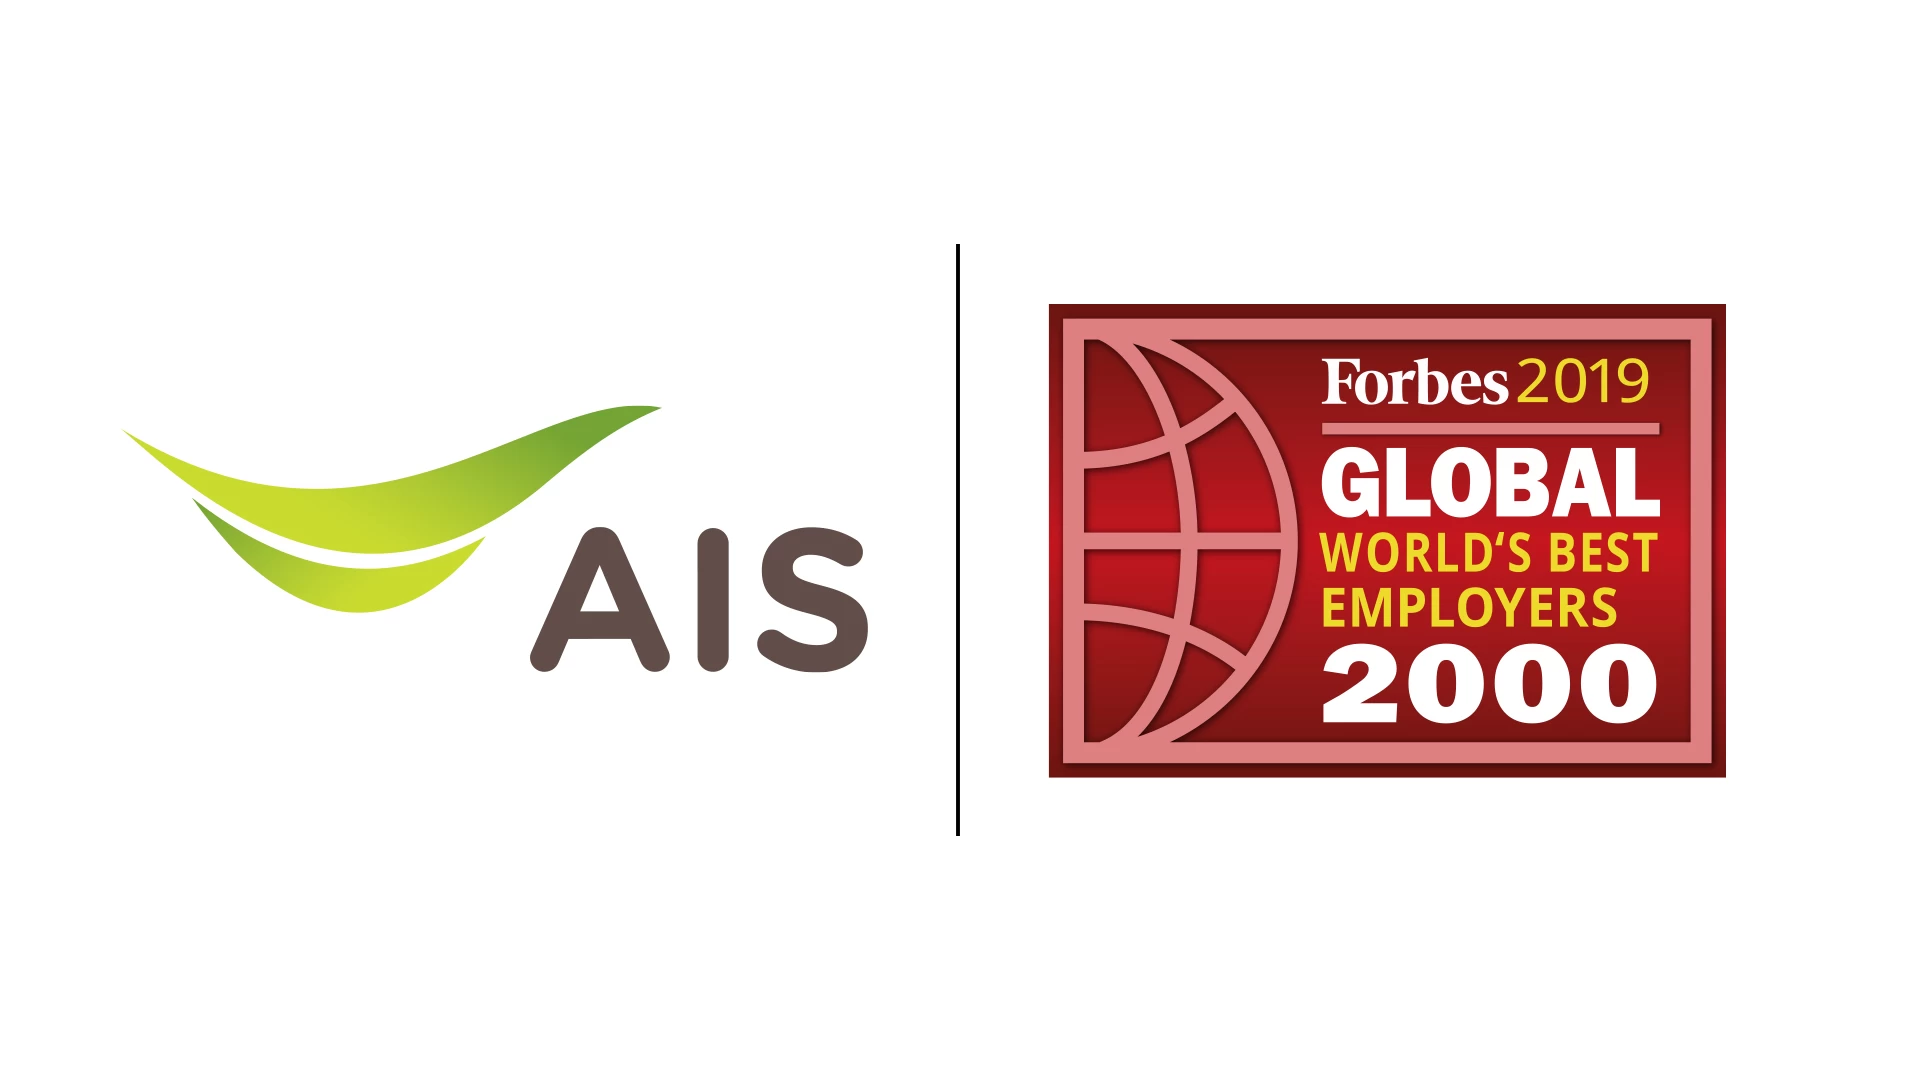 200121 Pic 1 เอไอเอส ยืนหนึ่งบริษัทไทยเพียงรายเดียว ติดอันดับ Top 200 สุดยอดนายจ้างแห่งปีระดับโลก | AIS | AIS บริษัทไทยเพียงรายเดียวที่ติด Top 200 สุดยอดนายจ้างแห่งปีระดับโลก ที่จัดโดยนิตยสาร Forbes